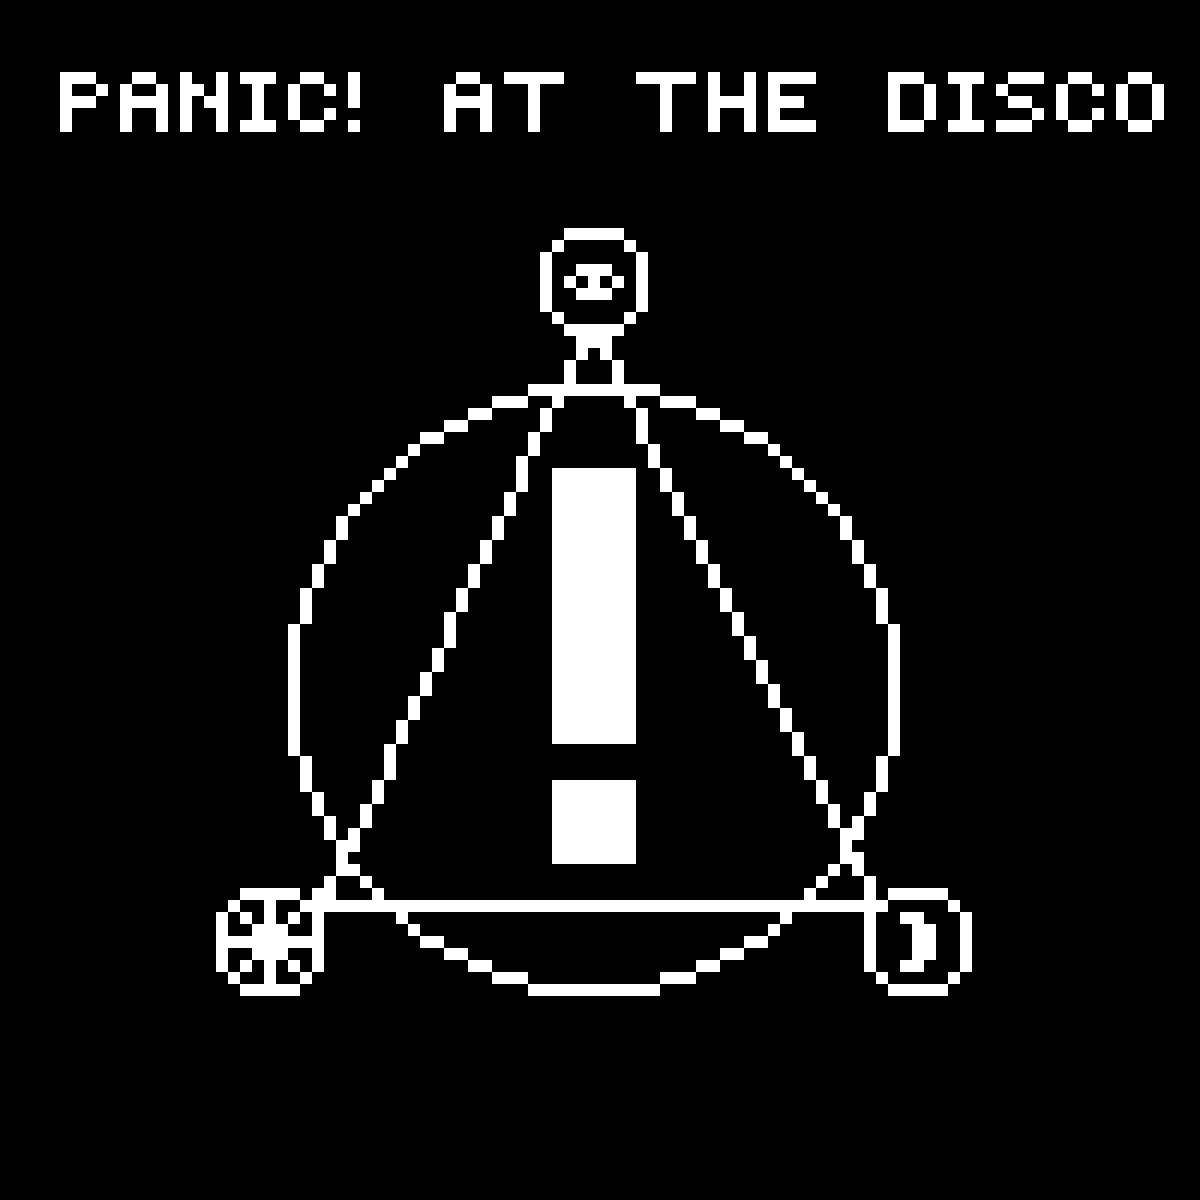 Panic at the Disco Logo - Pixilart! At The Disco logo